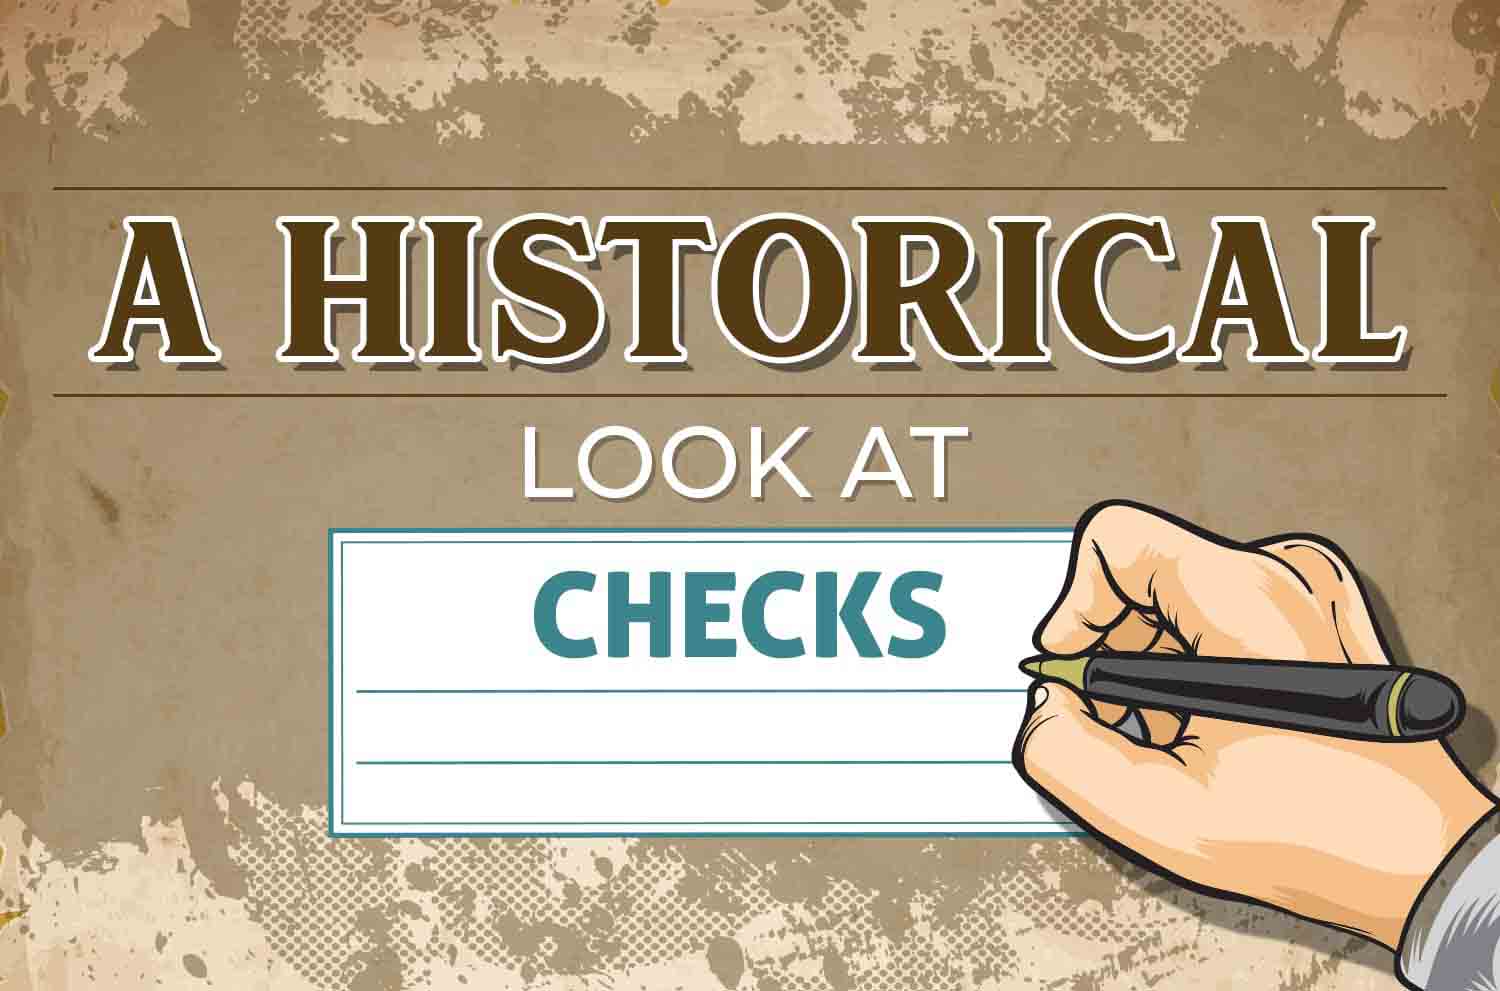 A Historical Look at Checks